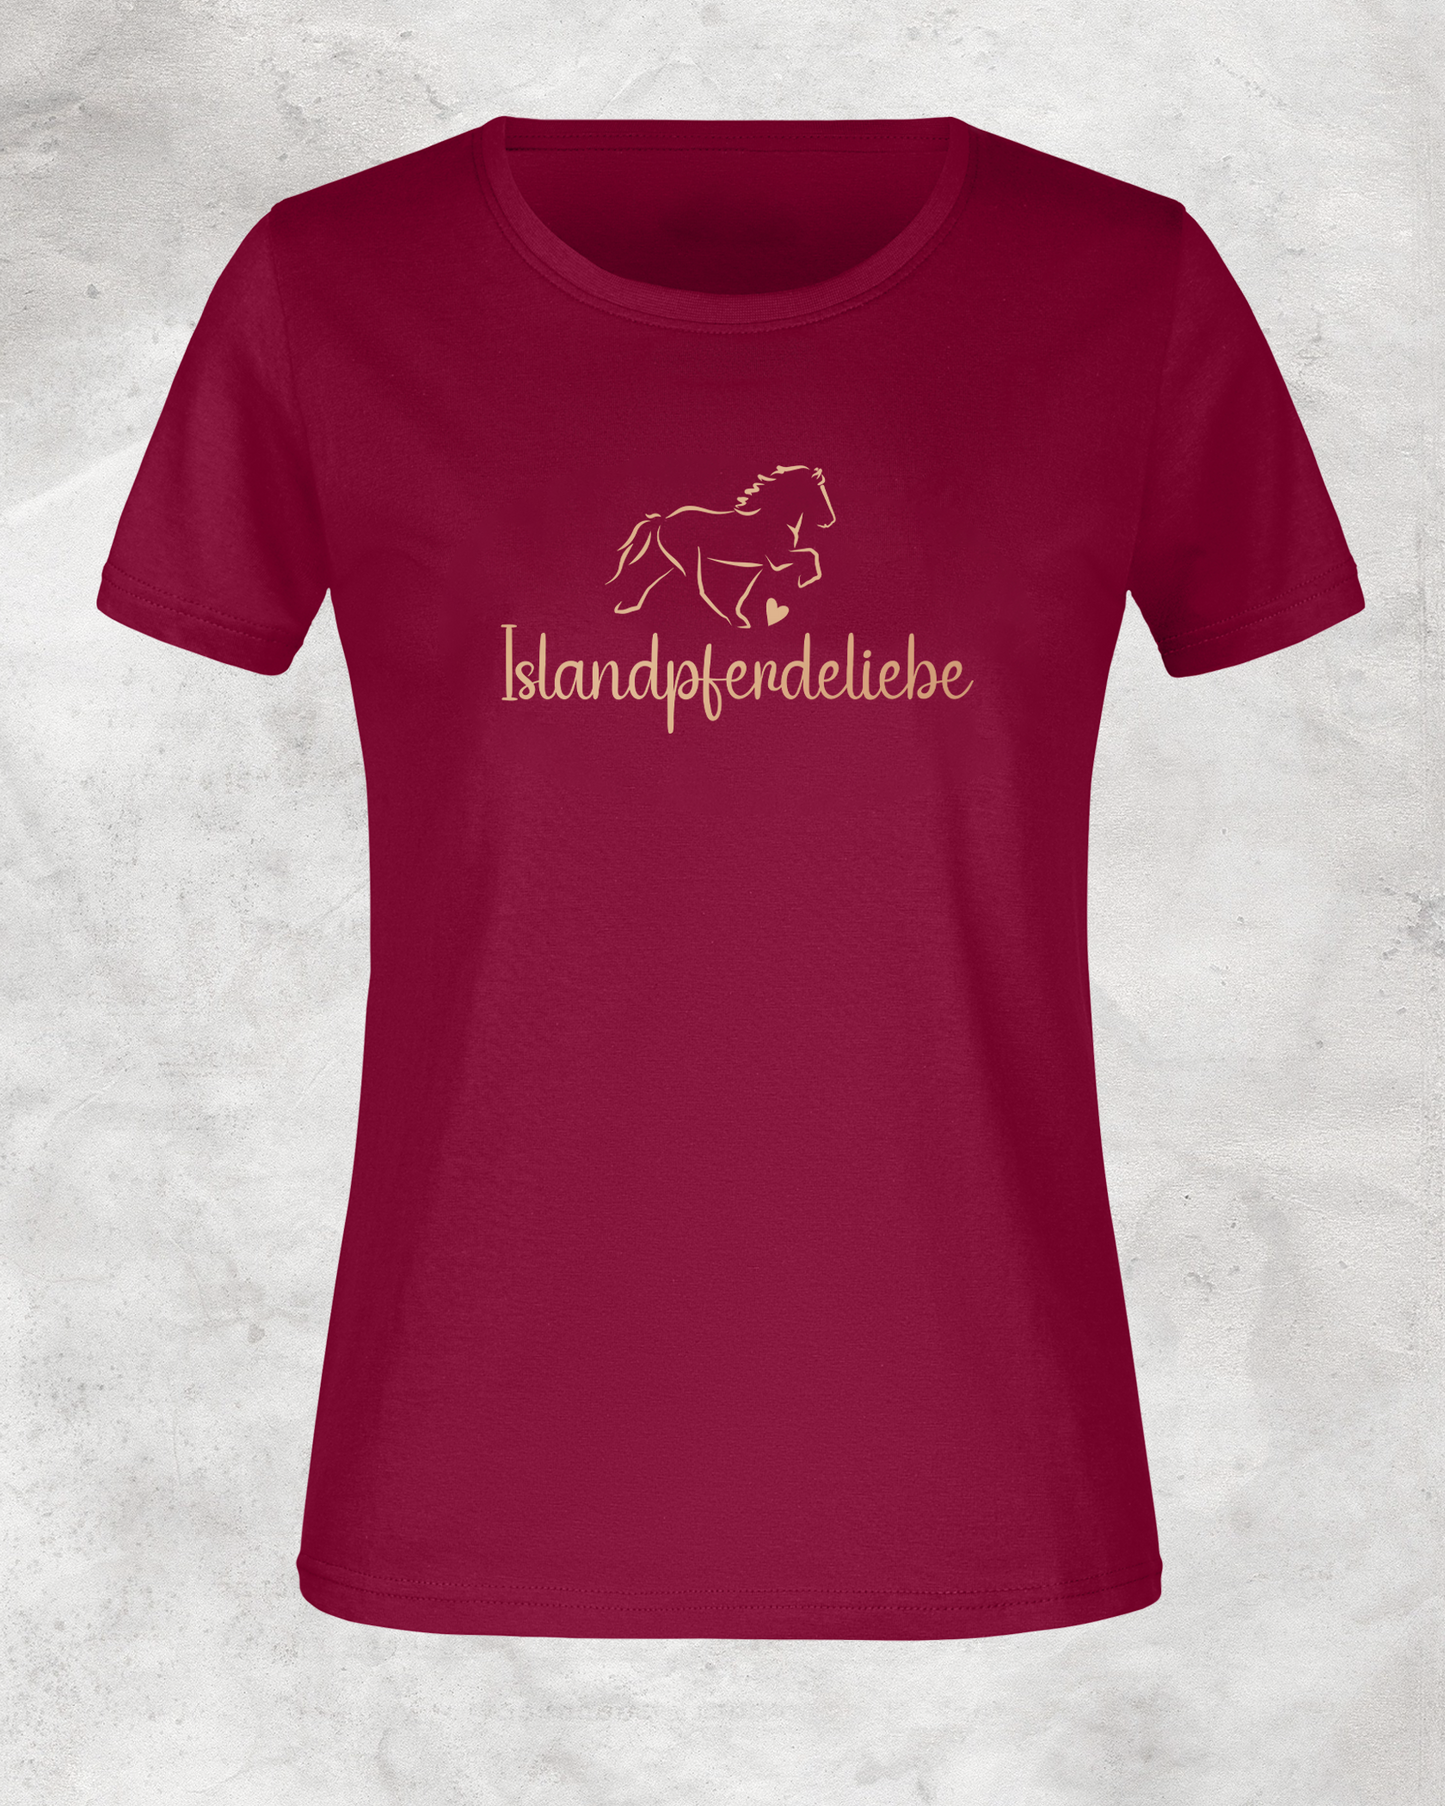 Damen-Shirt "Islandpferdeliebe"